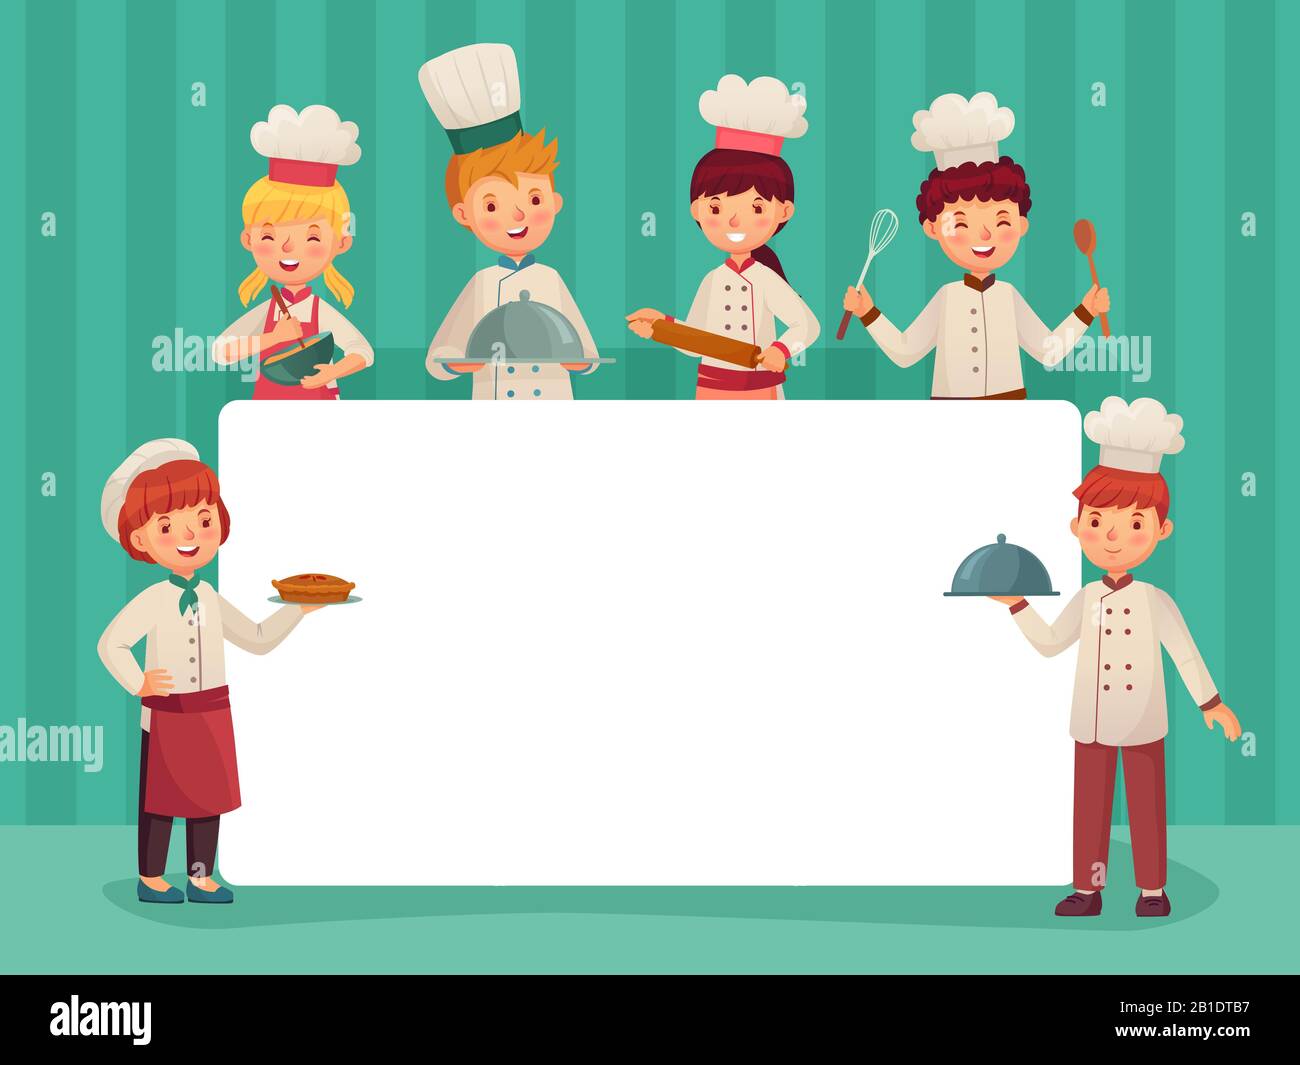 Niños cocinando imágenes de stock de arte vectorial